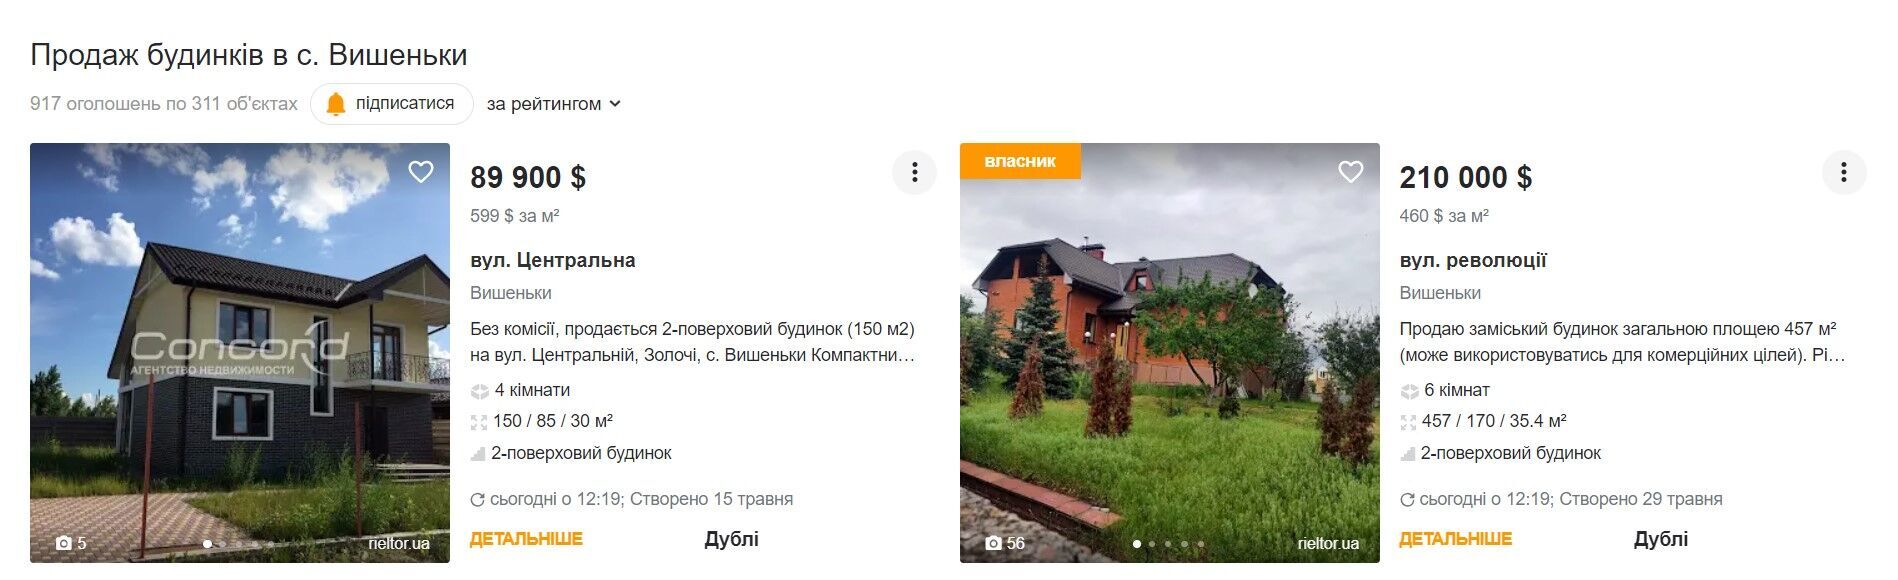 Орієнтовна вартість будинку у селі Вишеньки